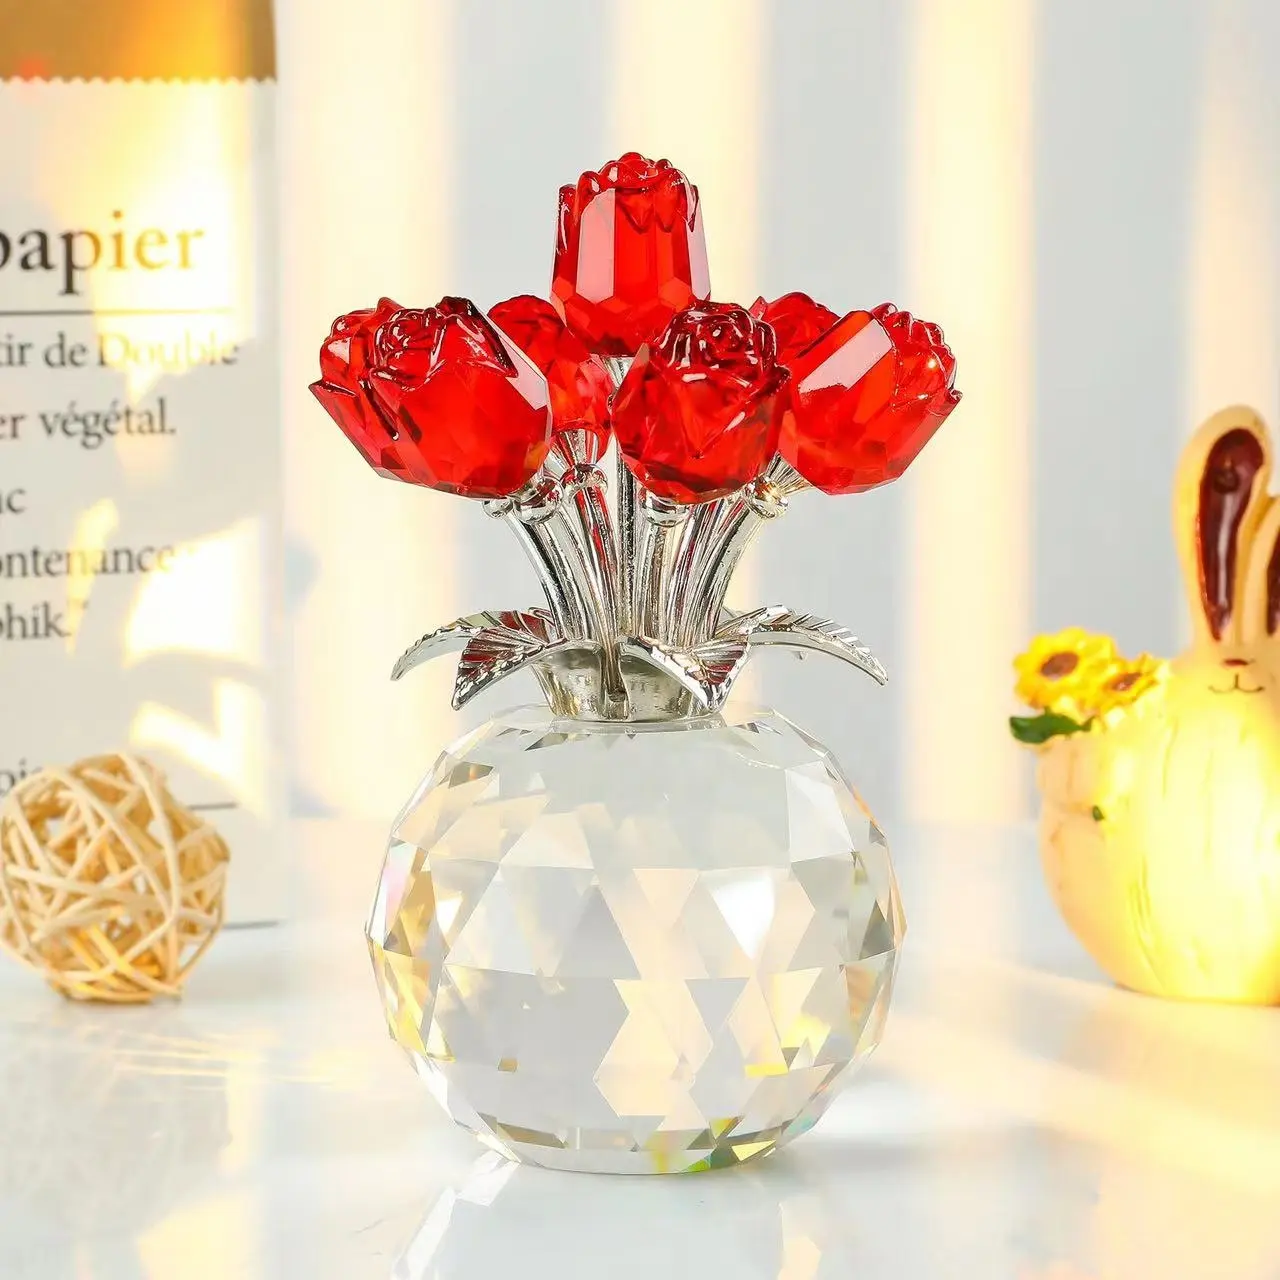 Vente en gros de presse-papier top k9 en cristal de rose avec fleur, cadeau de saint valentin avec abat-jour en verre transparent pour décoration de table